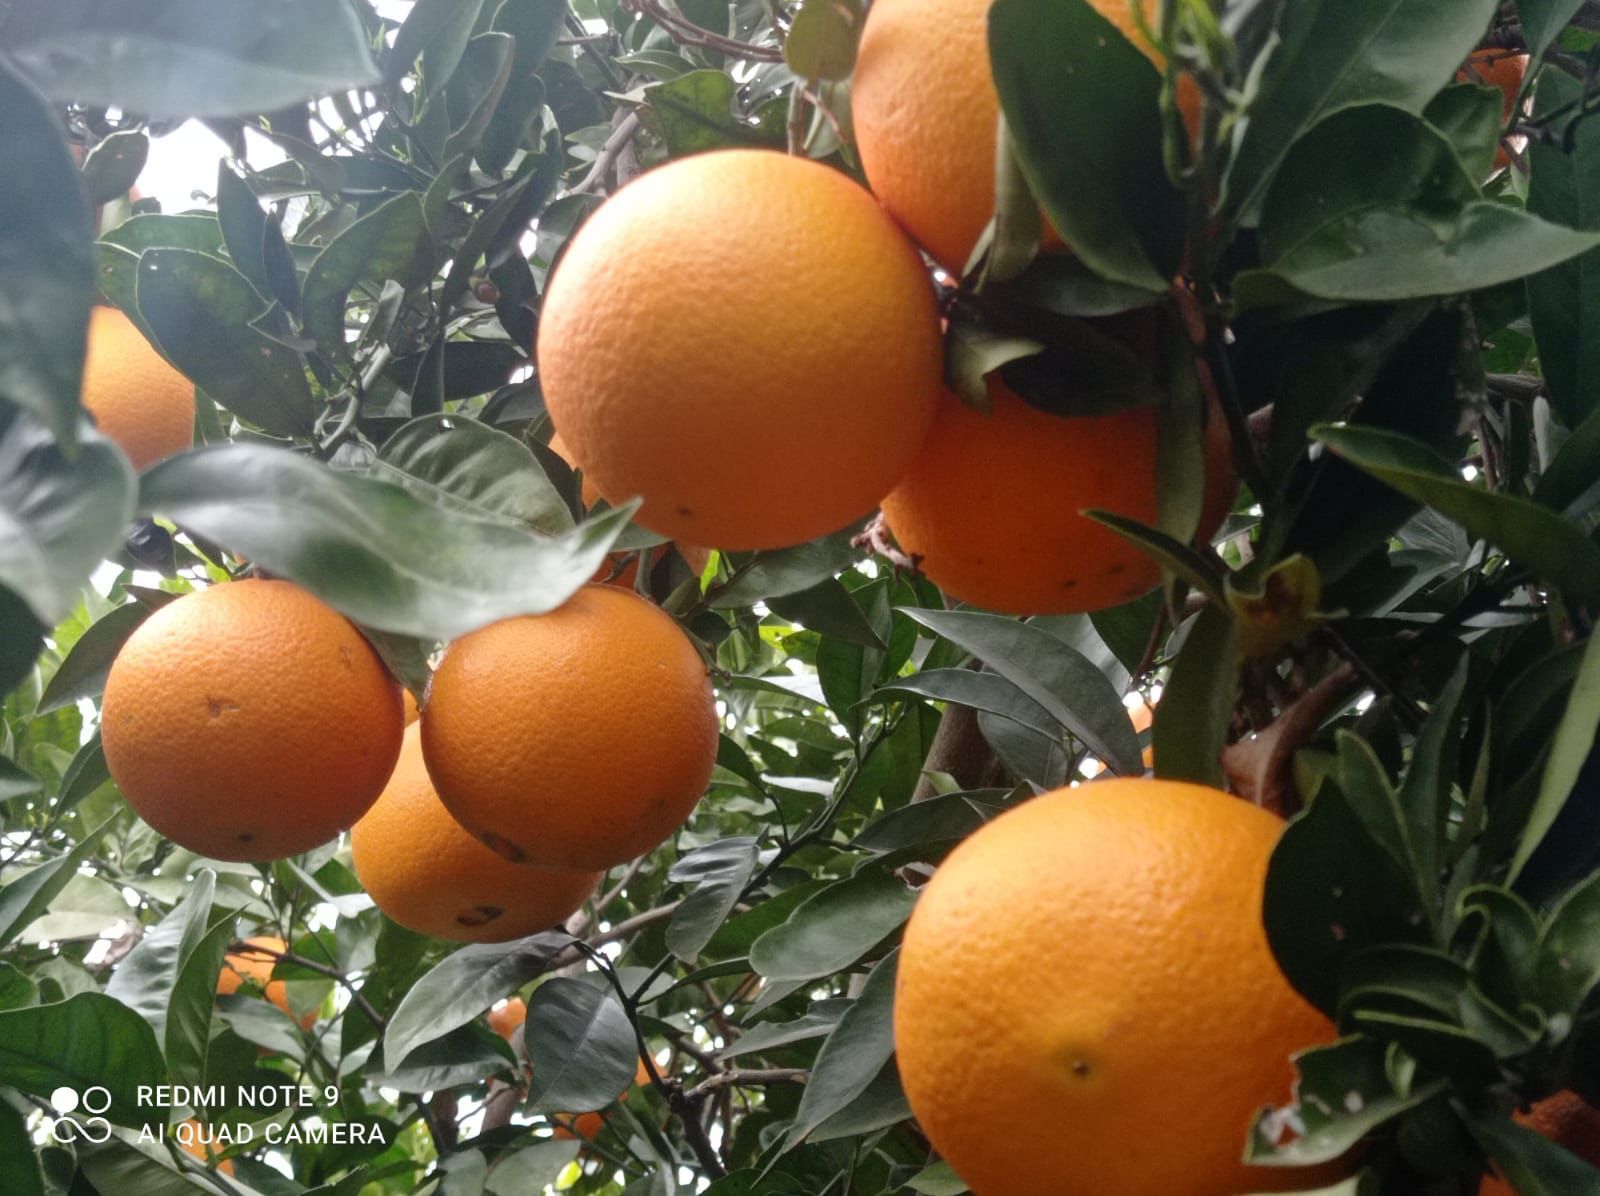 Naranjas la Torre regala cajas de 5kg de naranjas por su XVI aniversario